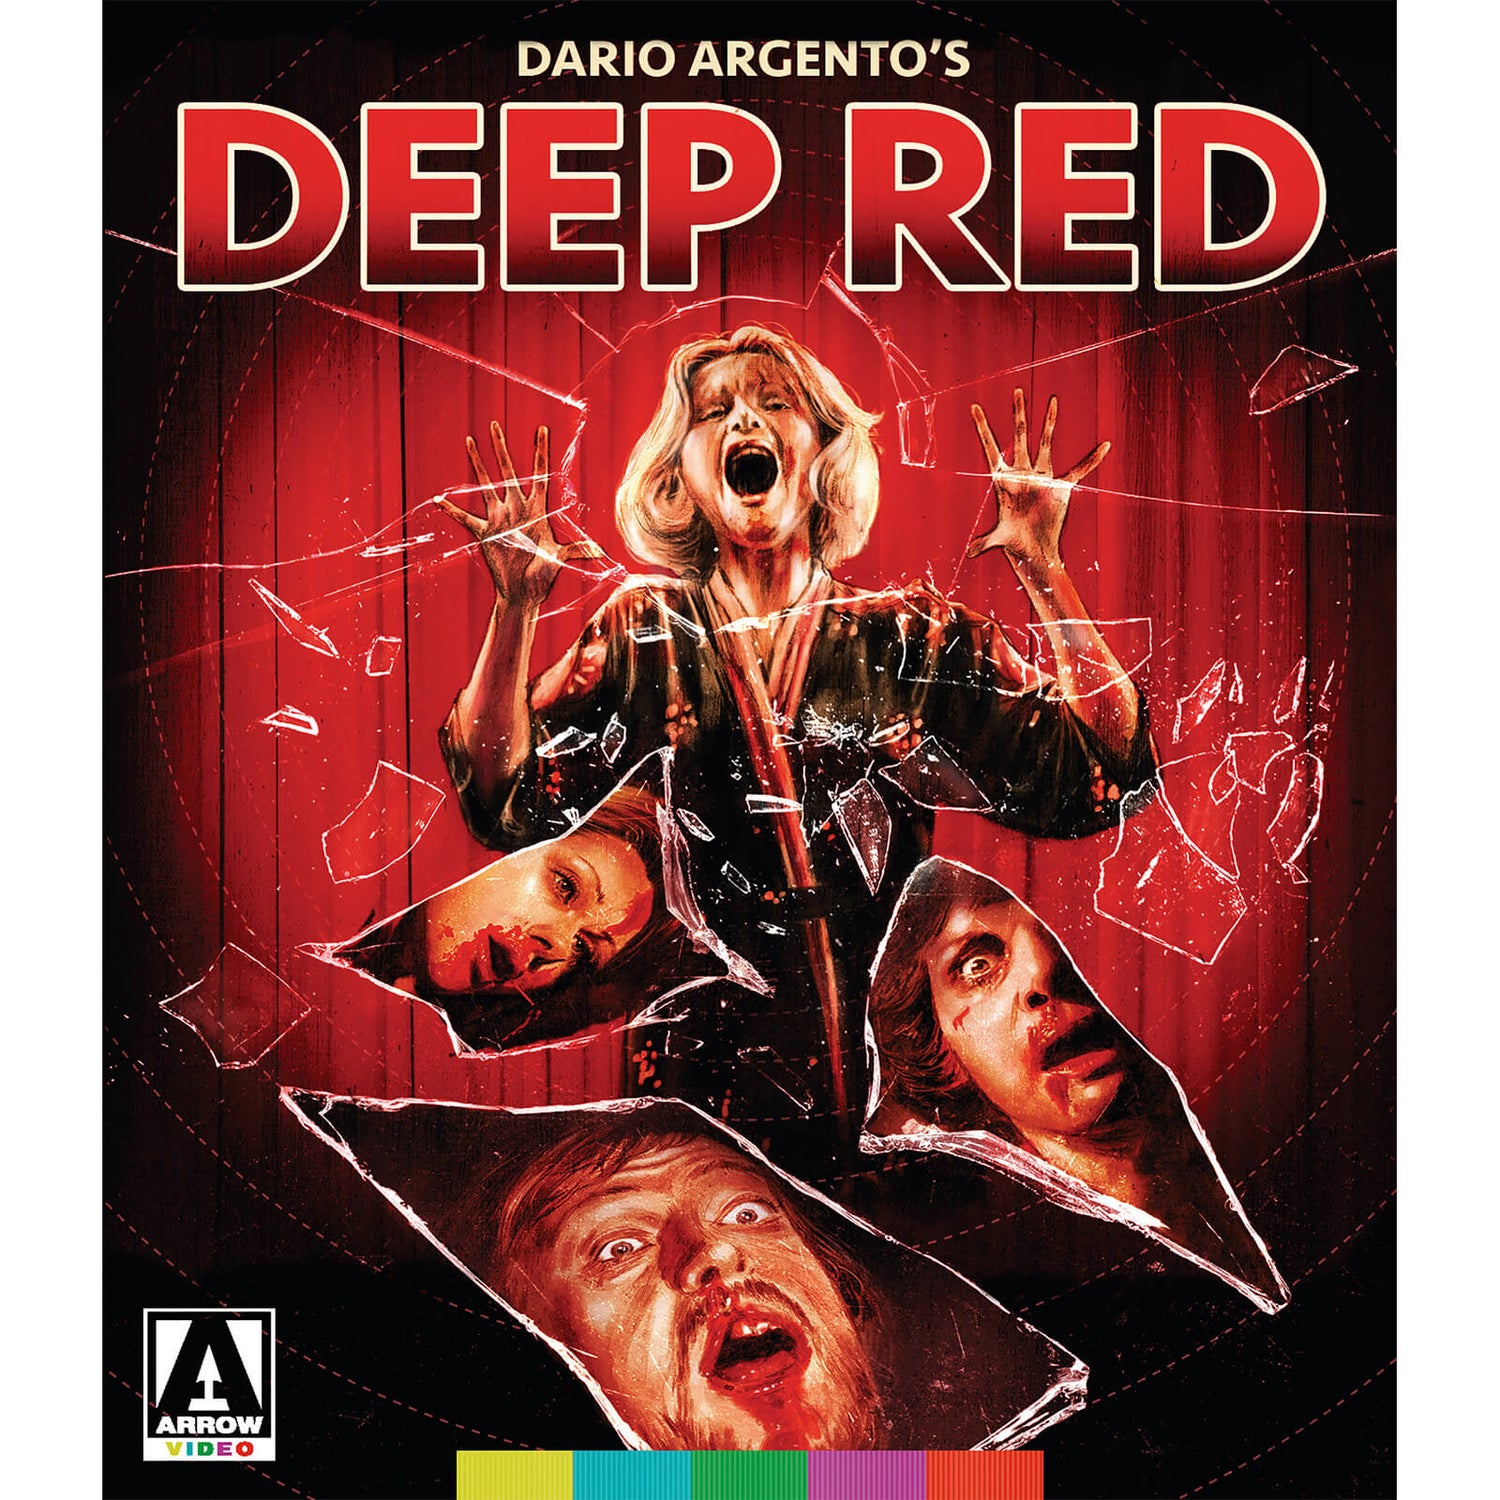 Deep Red Blu-ray